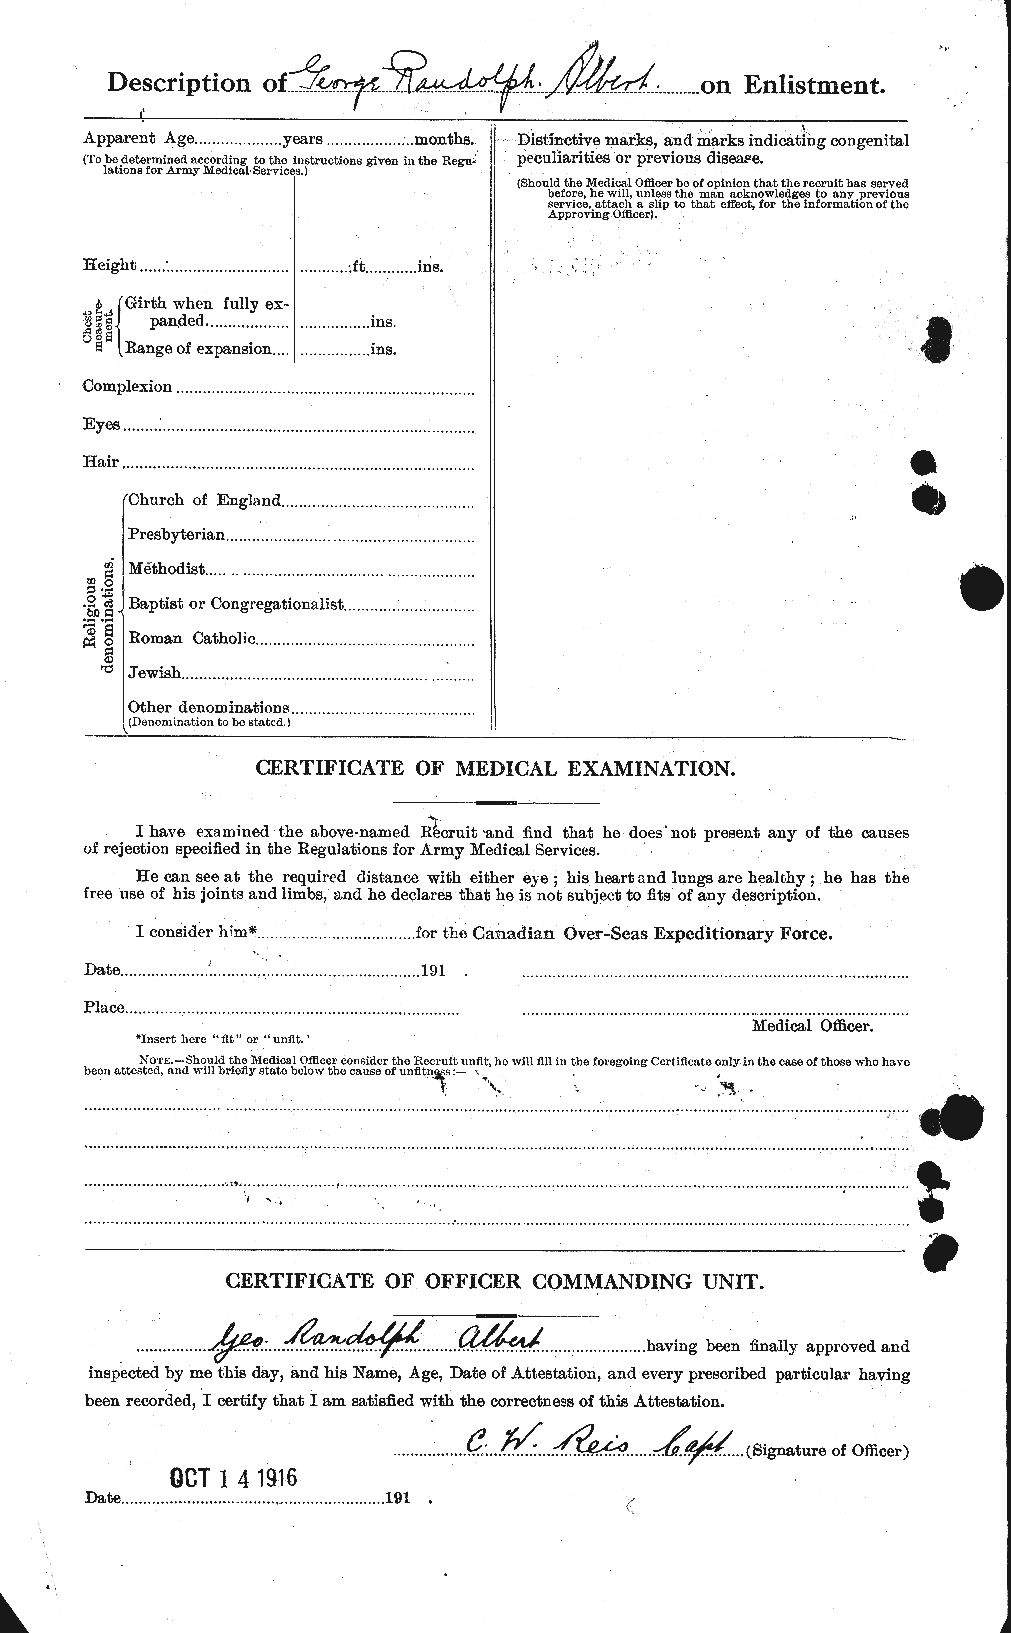 Dossiers du Personnel de la Première Guerre mondiale - CEC 204589b